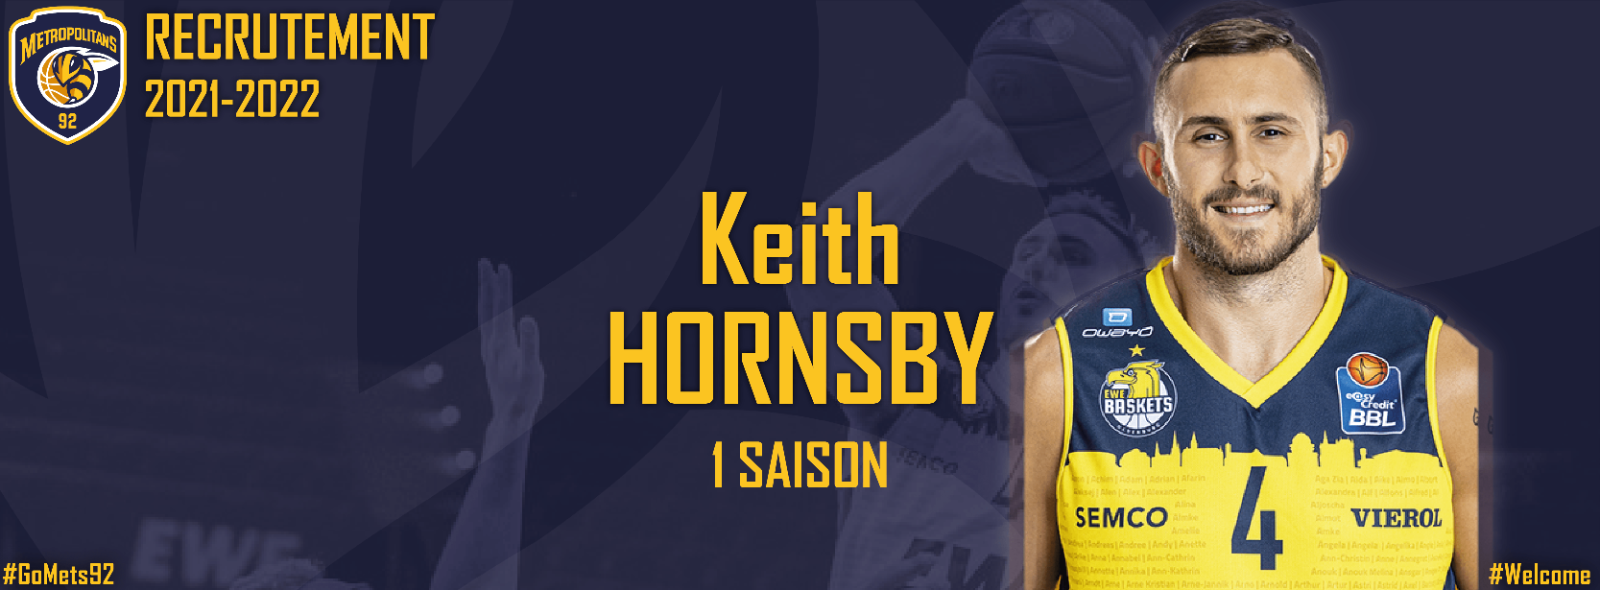 Recrutement - Keith Hornsby nouveau joueur des Metropolitans 92 !